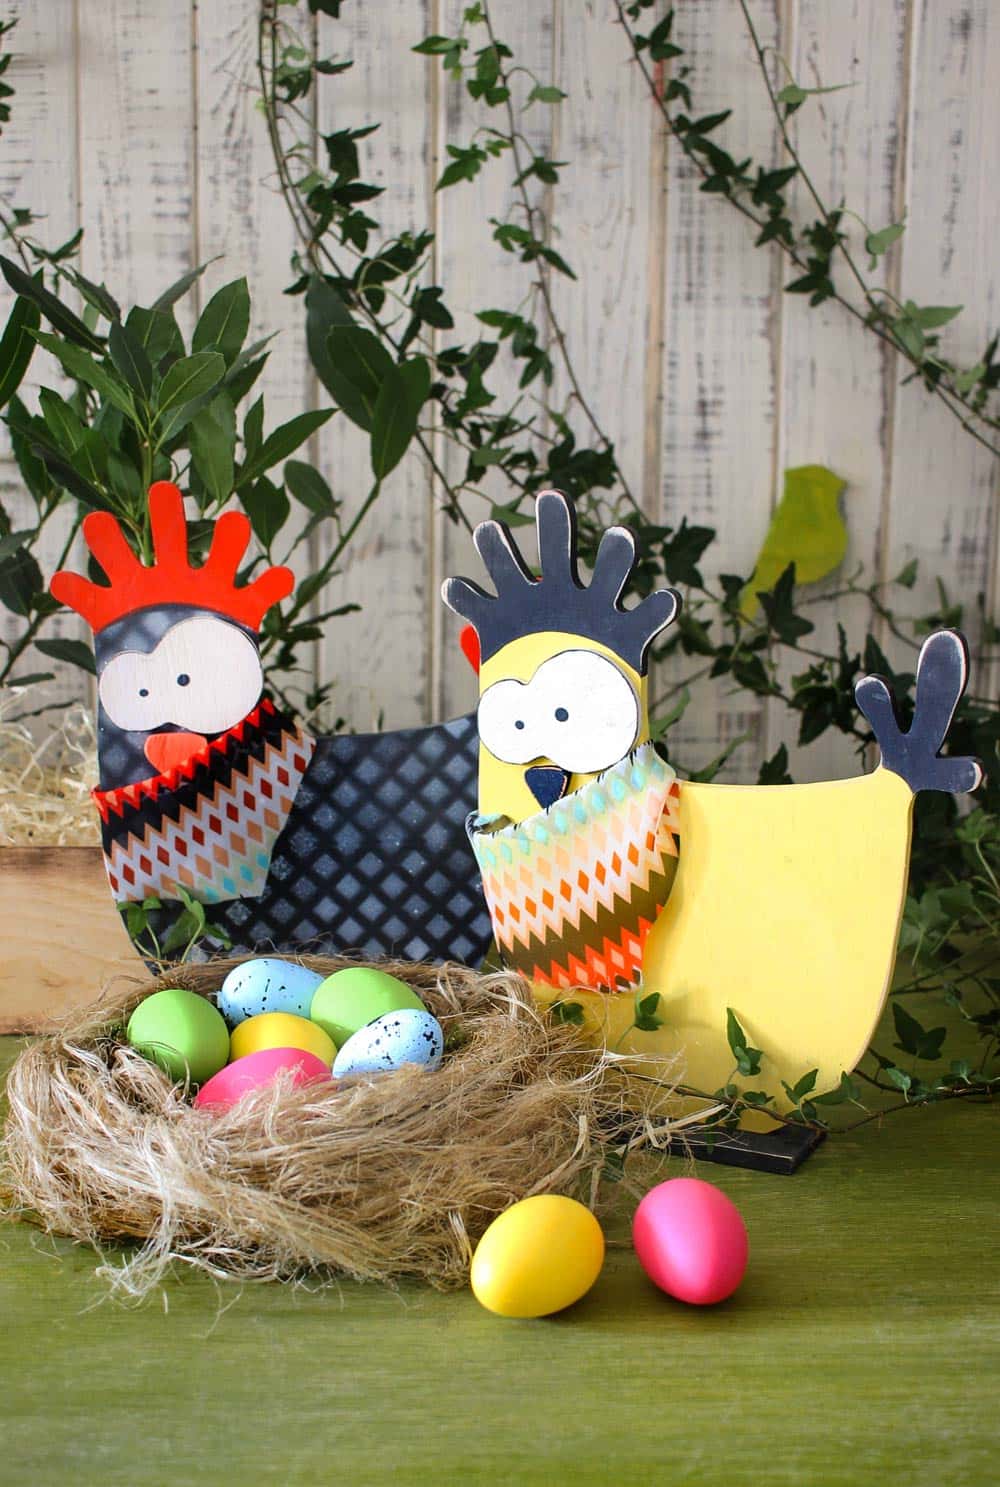 Разноцветные яйца-крашанки и куры - традиционный пасхальный декор